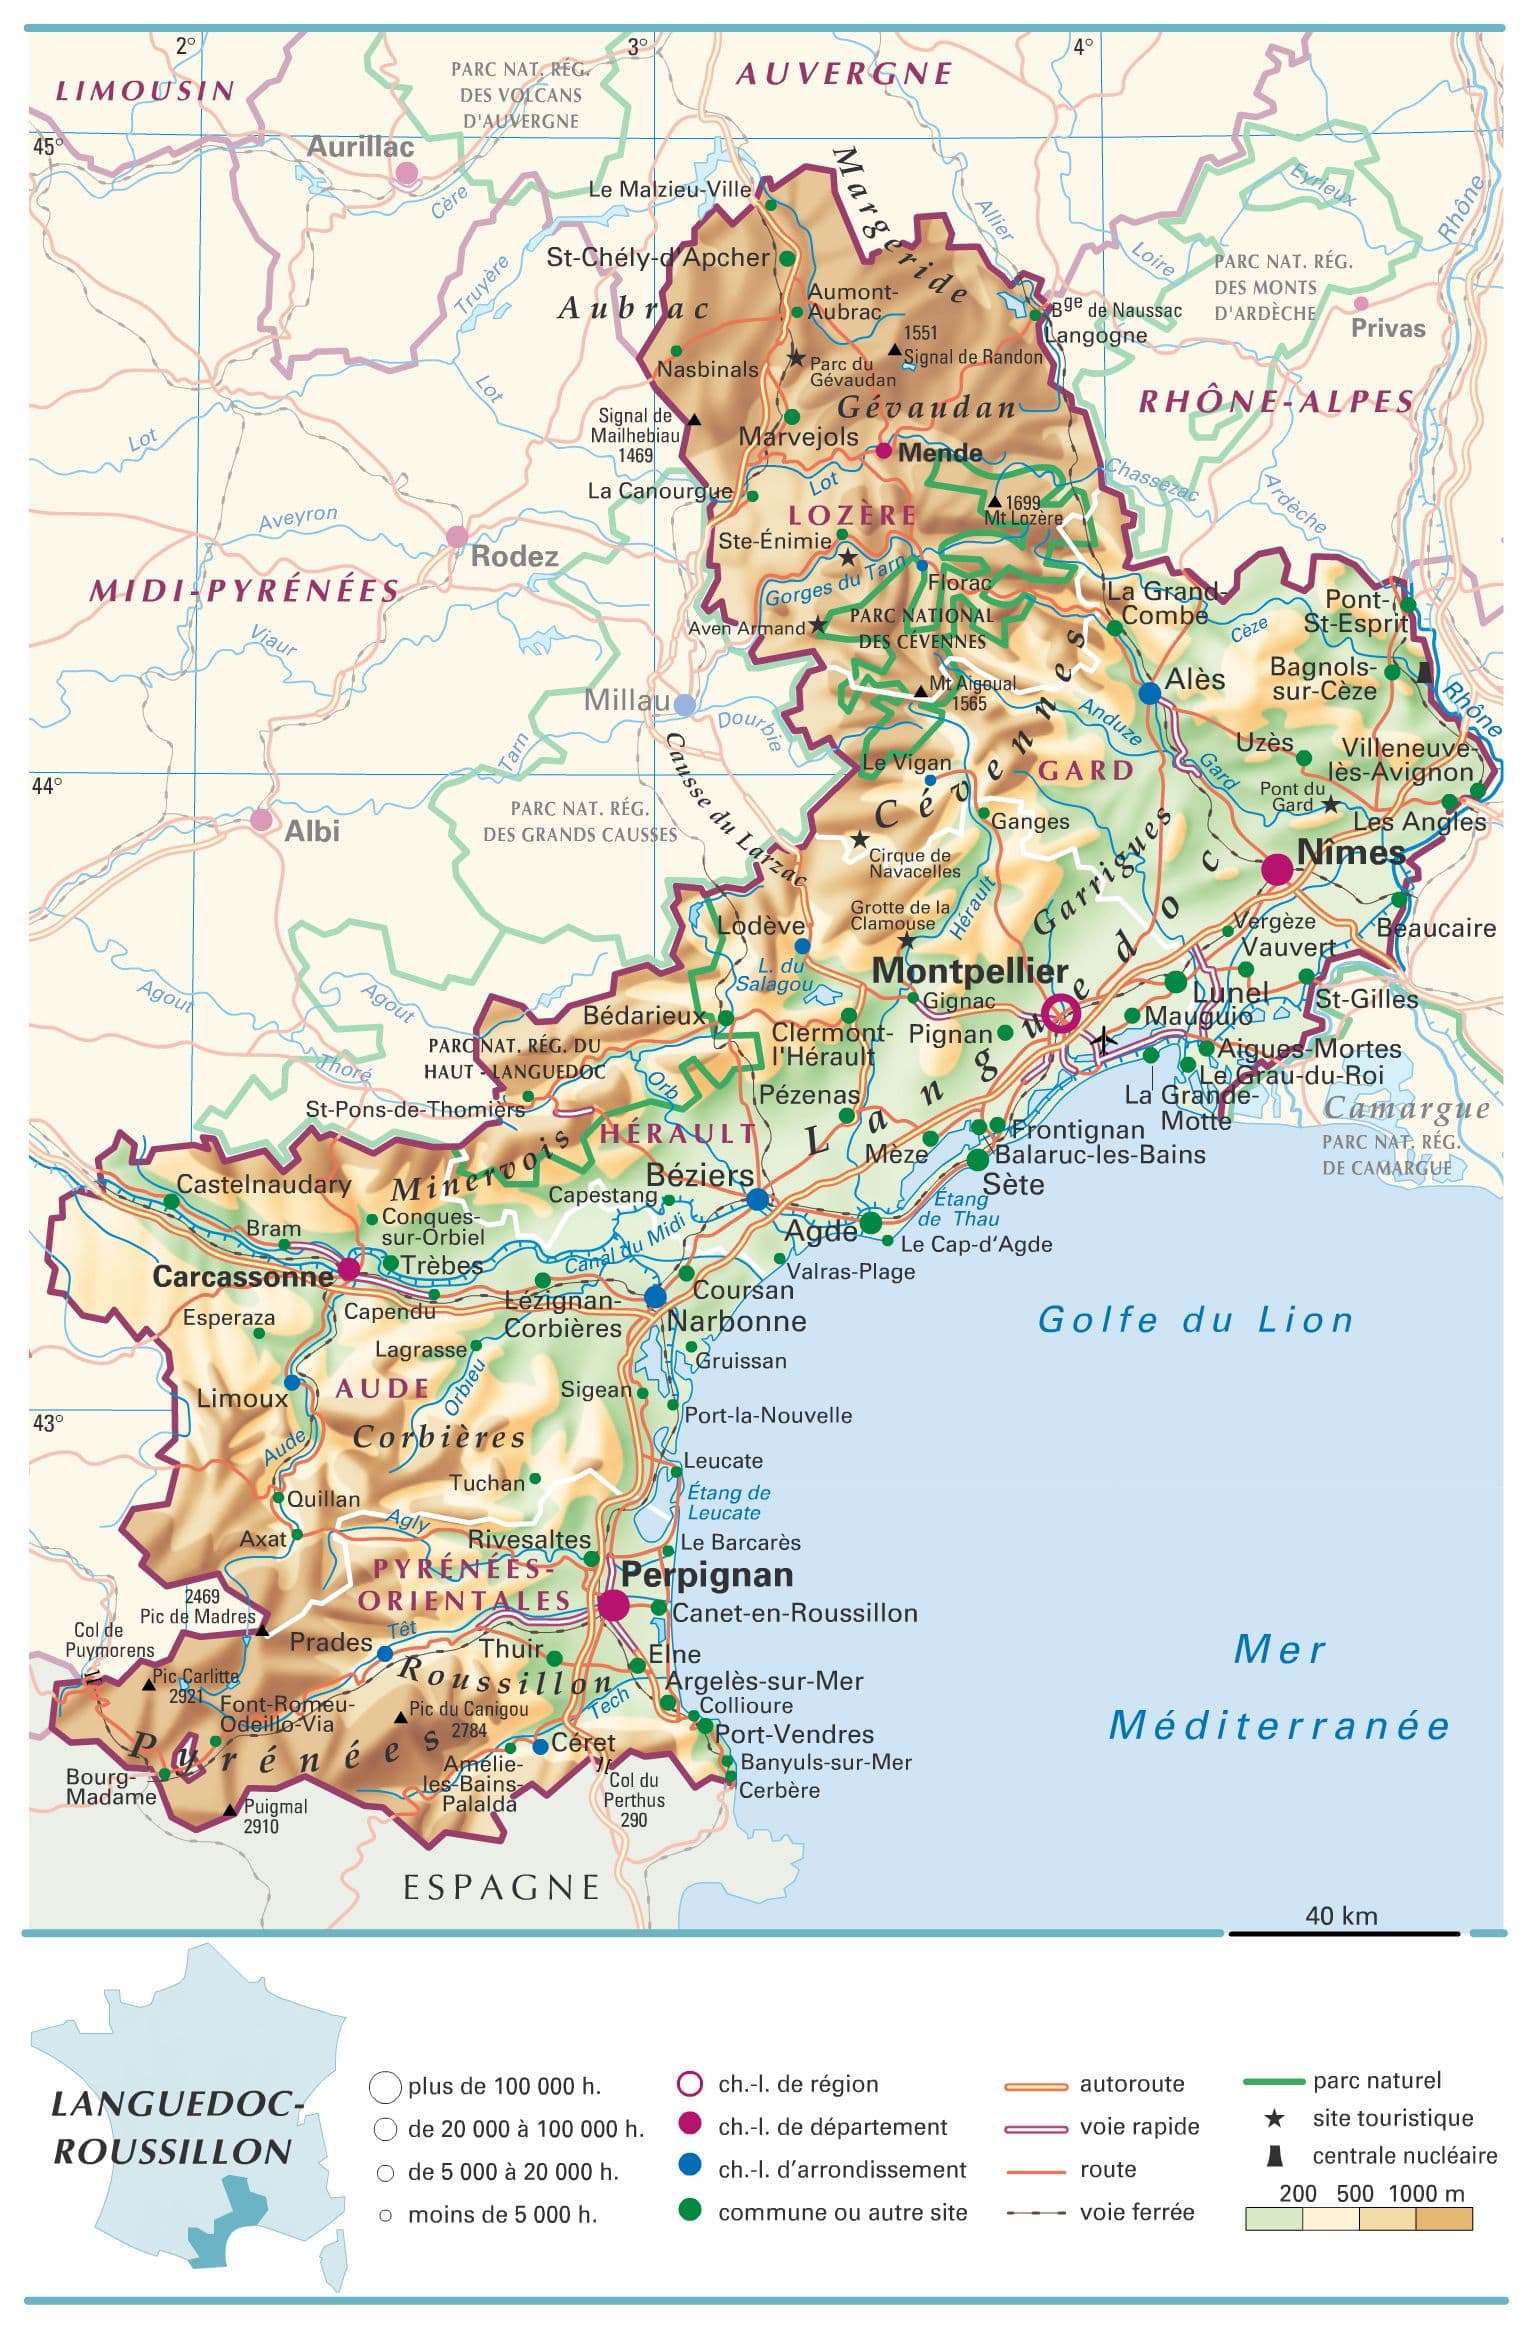 carte du languedoc roussillon Encyclopédie Larousse en ligne   Languedoc Roussillon